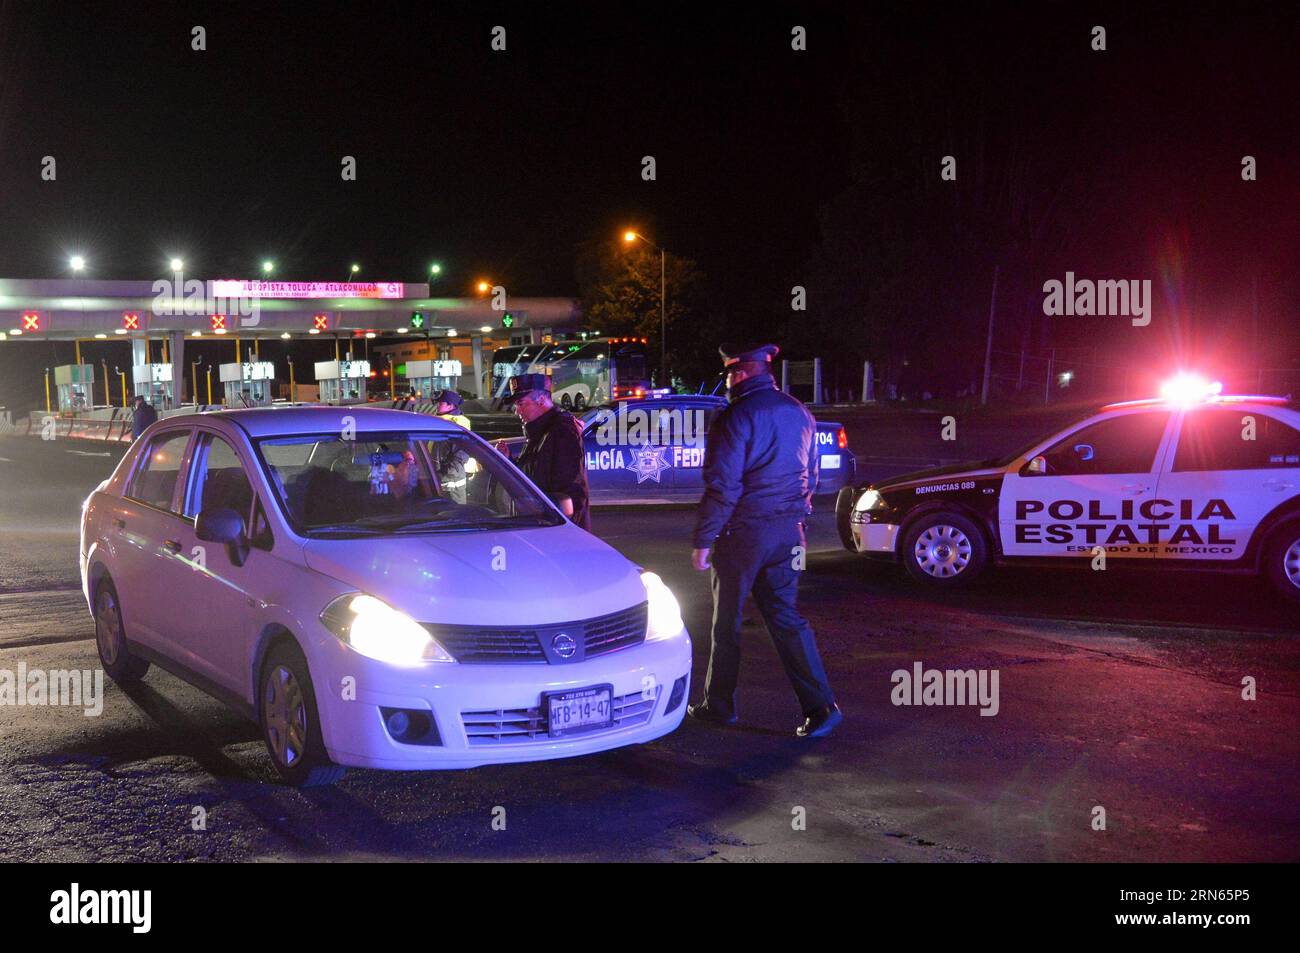 ALMOLOYA DE JUAREZ, les forces de sécurité publique de l'État de Mexico inspectent un véhicule lors d'une opération de perquisition près de l'Altiplano prision, à Almoloya de Juarez, État de Mexico, Mexique. Le roi du cartel de la drogue Joaquin El Chapo Guzman, chef du cartel de la drogue de Sinaloa, a disparu samedi soir de la prison de haute sécurité Altiplano à l'extérieur de Mexico, selon la Commission de sécurité nationale. (Zjy) MEXICO-ALMOLOYA DE JUAREZ-GUZMAN-ESCAPE MarioxVazquez/MVT PUBLICATIONxNOTxINxCHN ALMOLOYA de Juarez les forces de sécurité publique de l'État de Mexico inspectent un véhicule lors d'une opération de recherche près de Th Banque D'Images